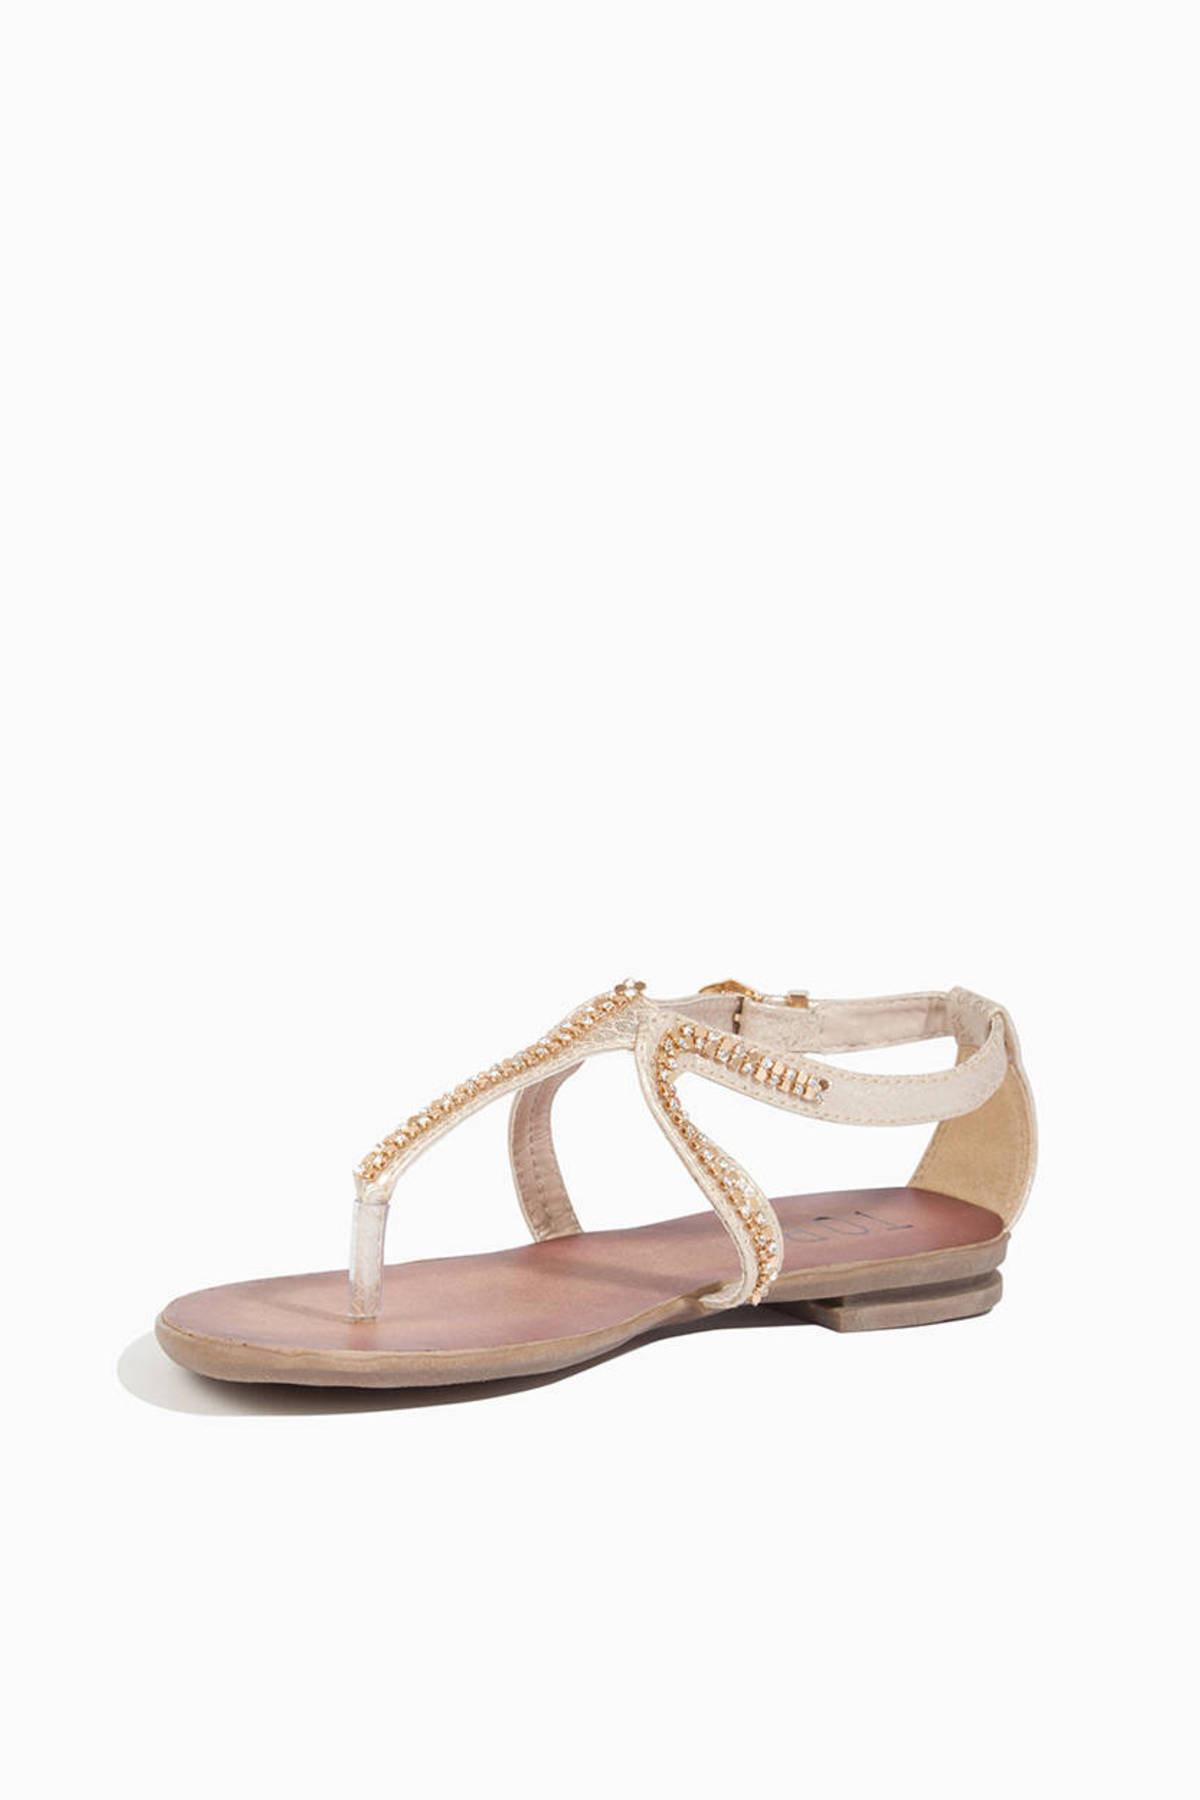 June Sandals in Taupe - $54 | Tobi US